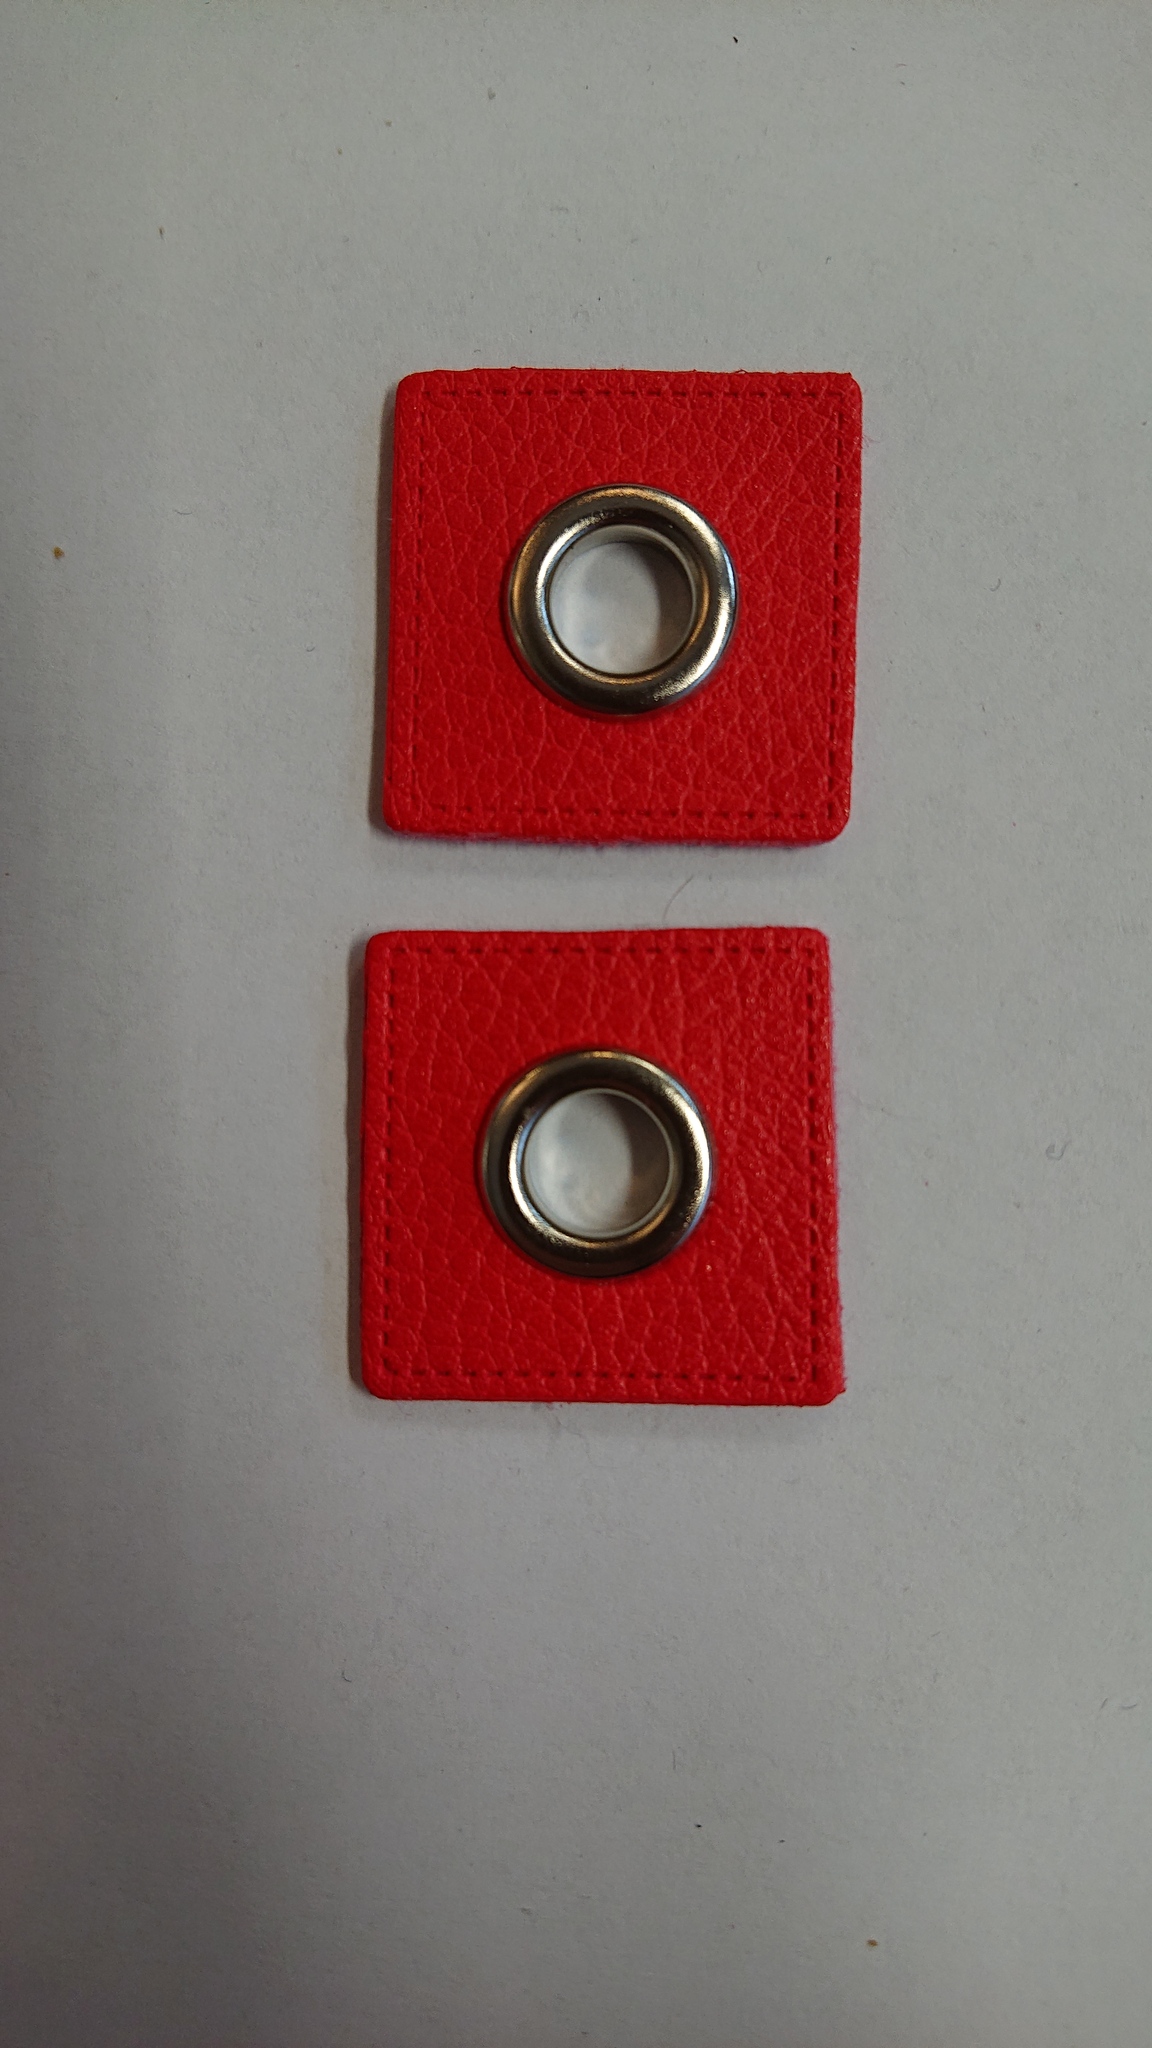 Öljettlapp - Röd Metall 2-pack 25x25mm